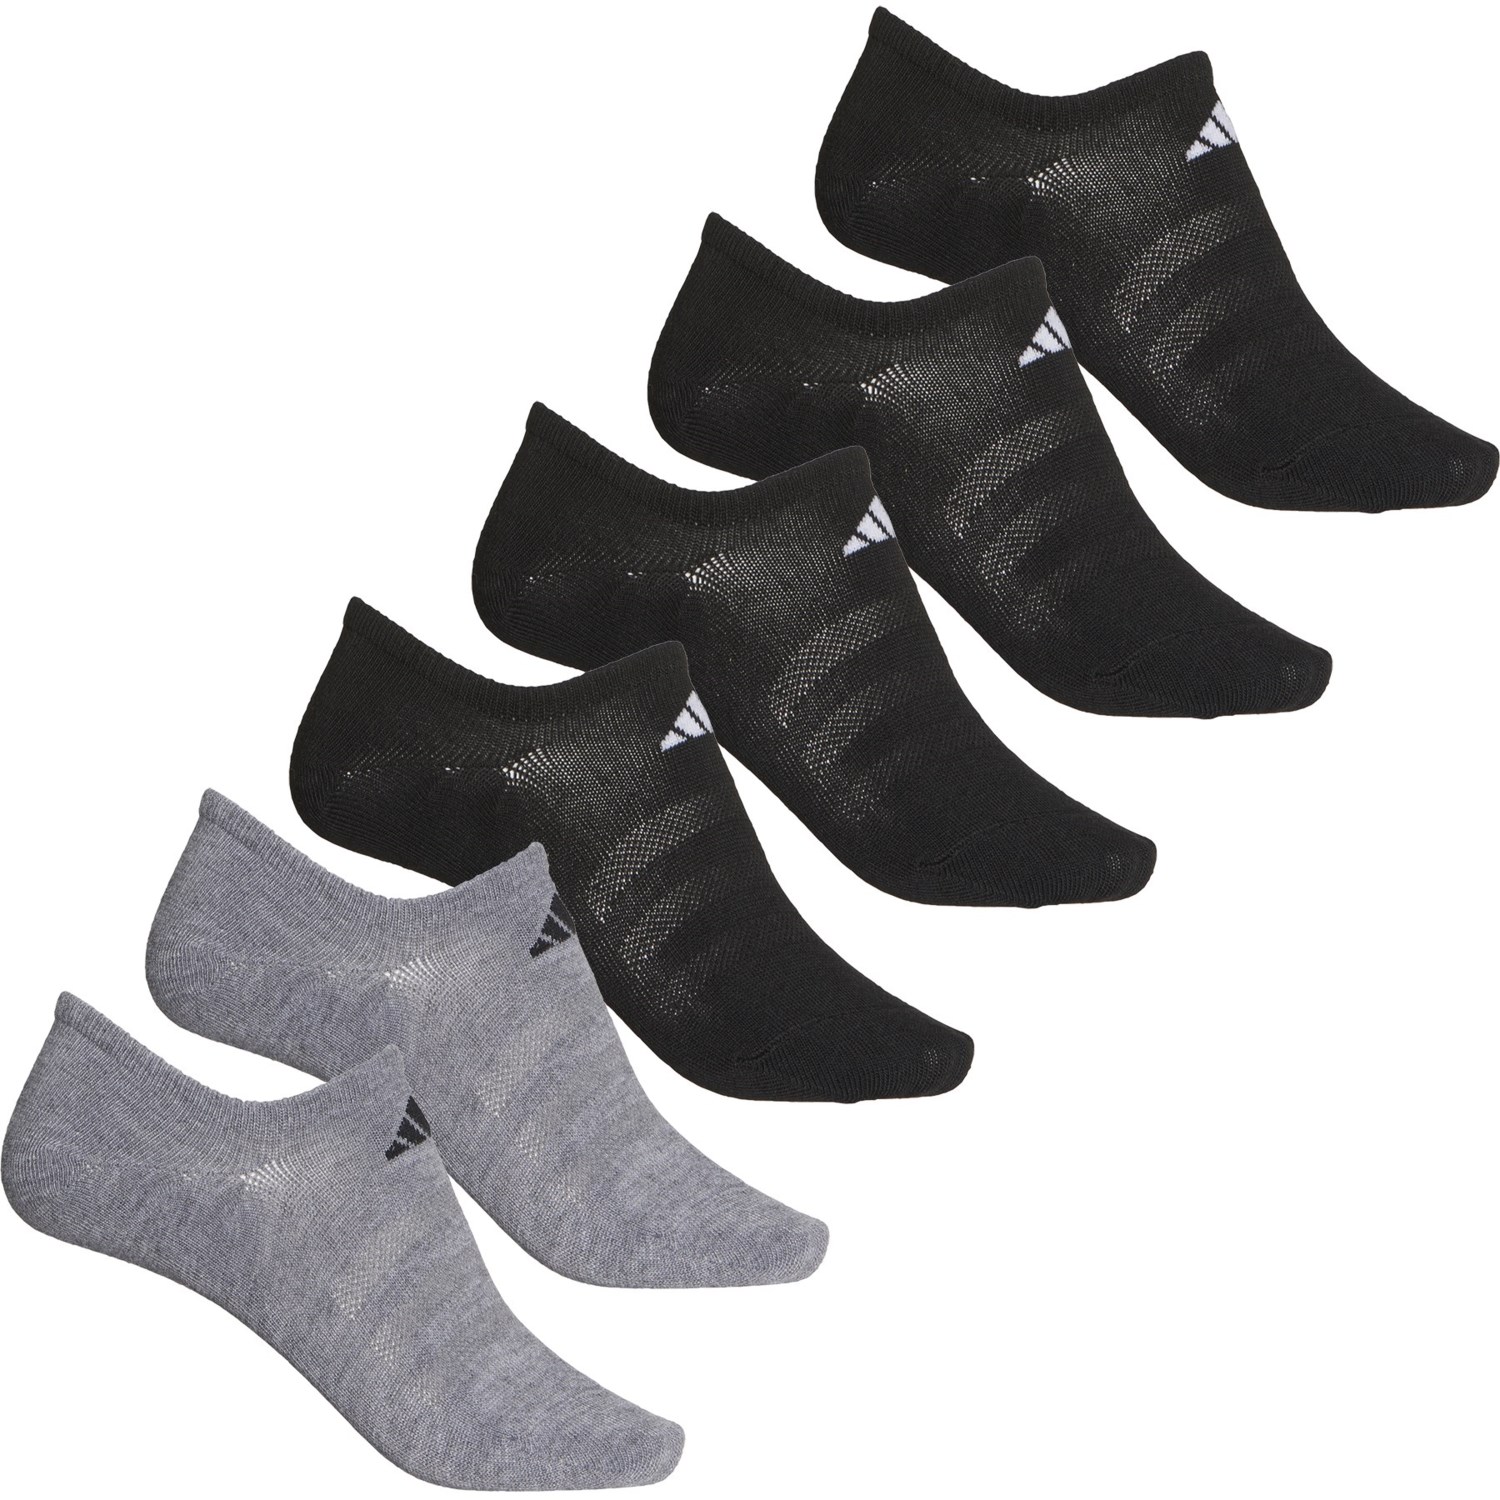 adidas Superlite Super No-Show Socks (For Women) - Save 44%